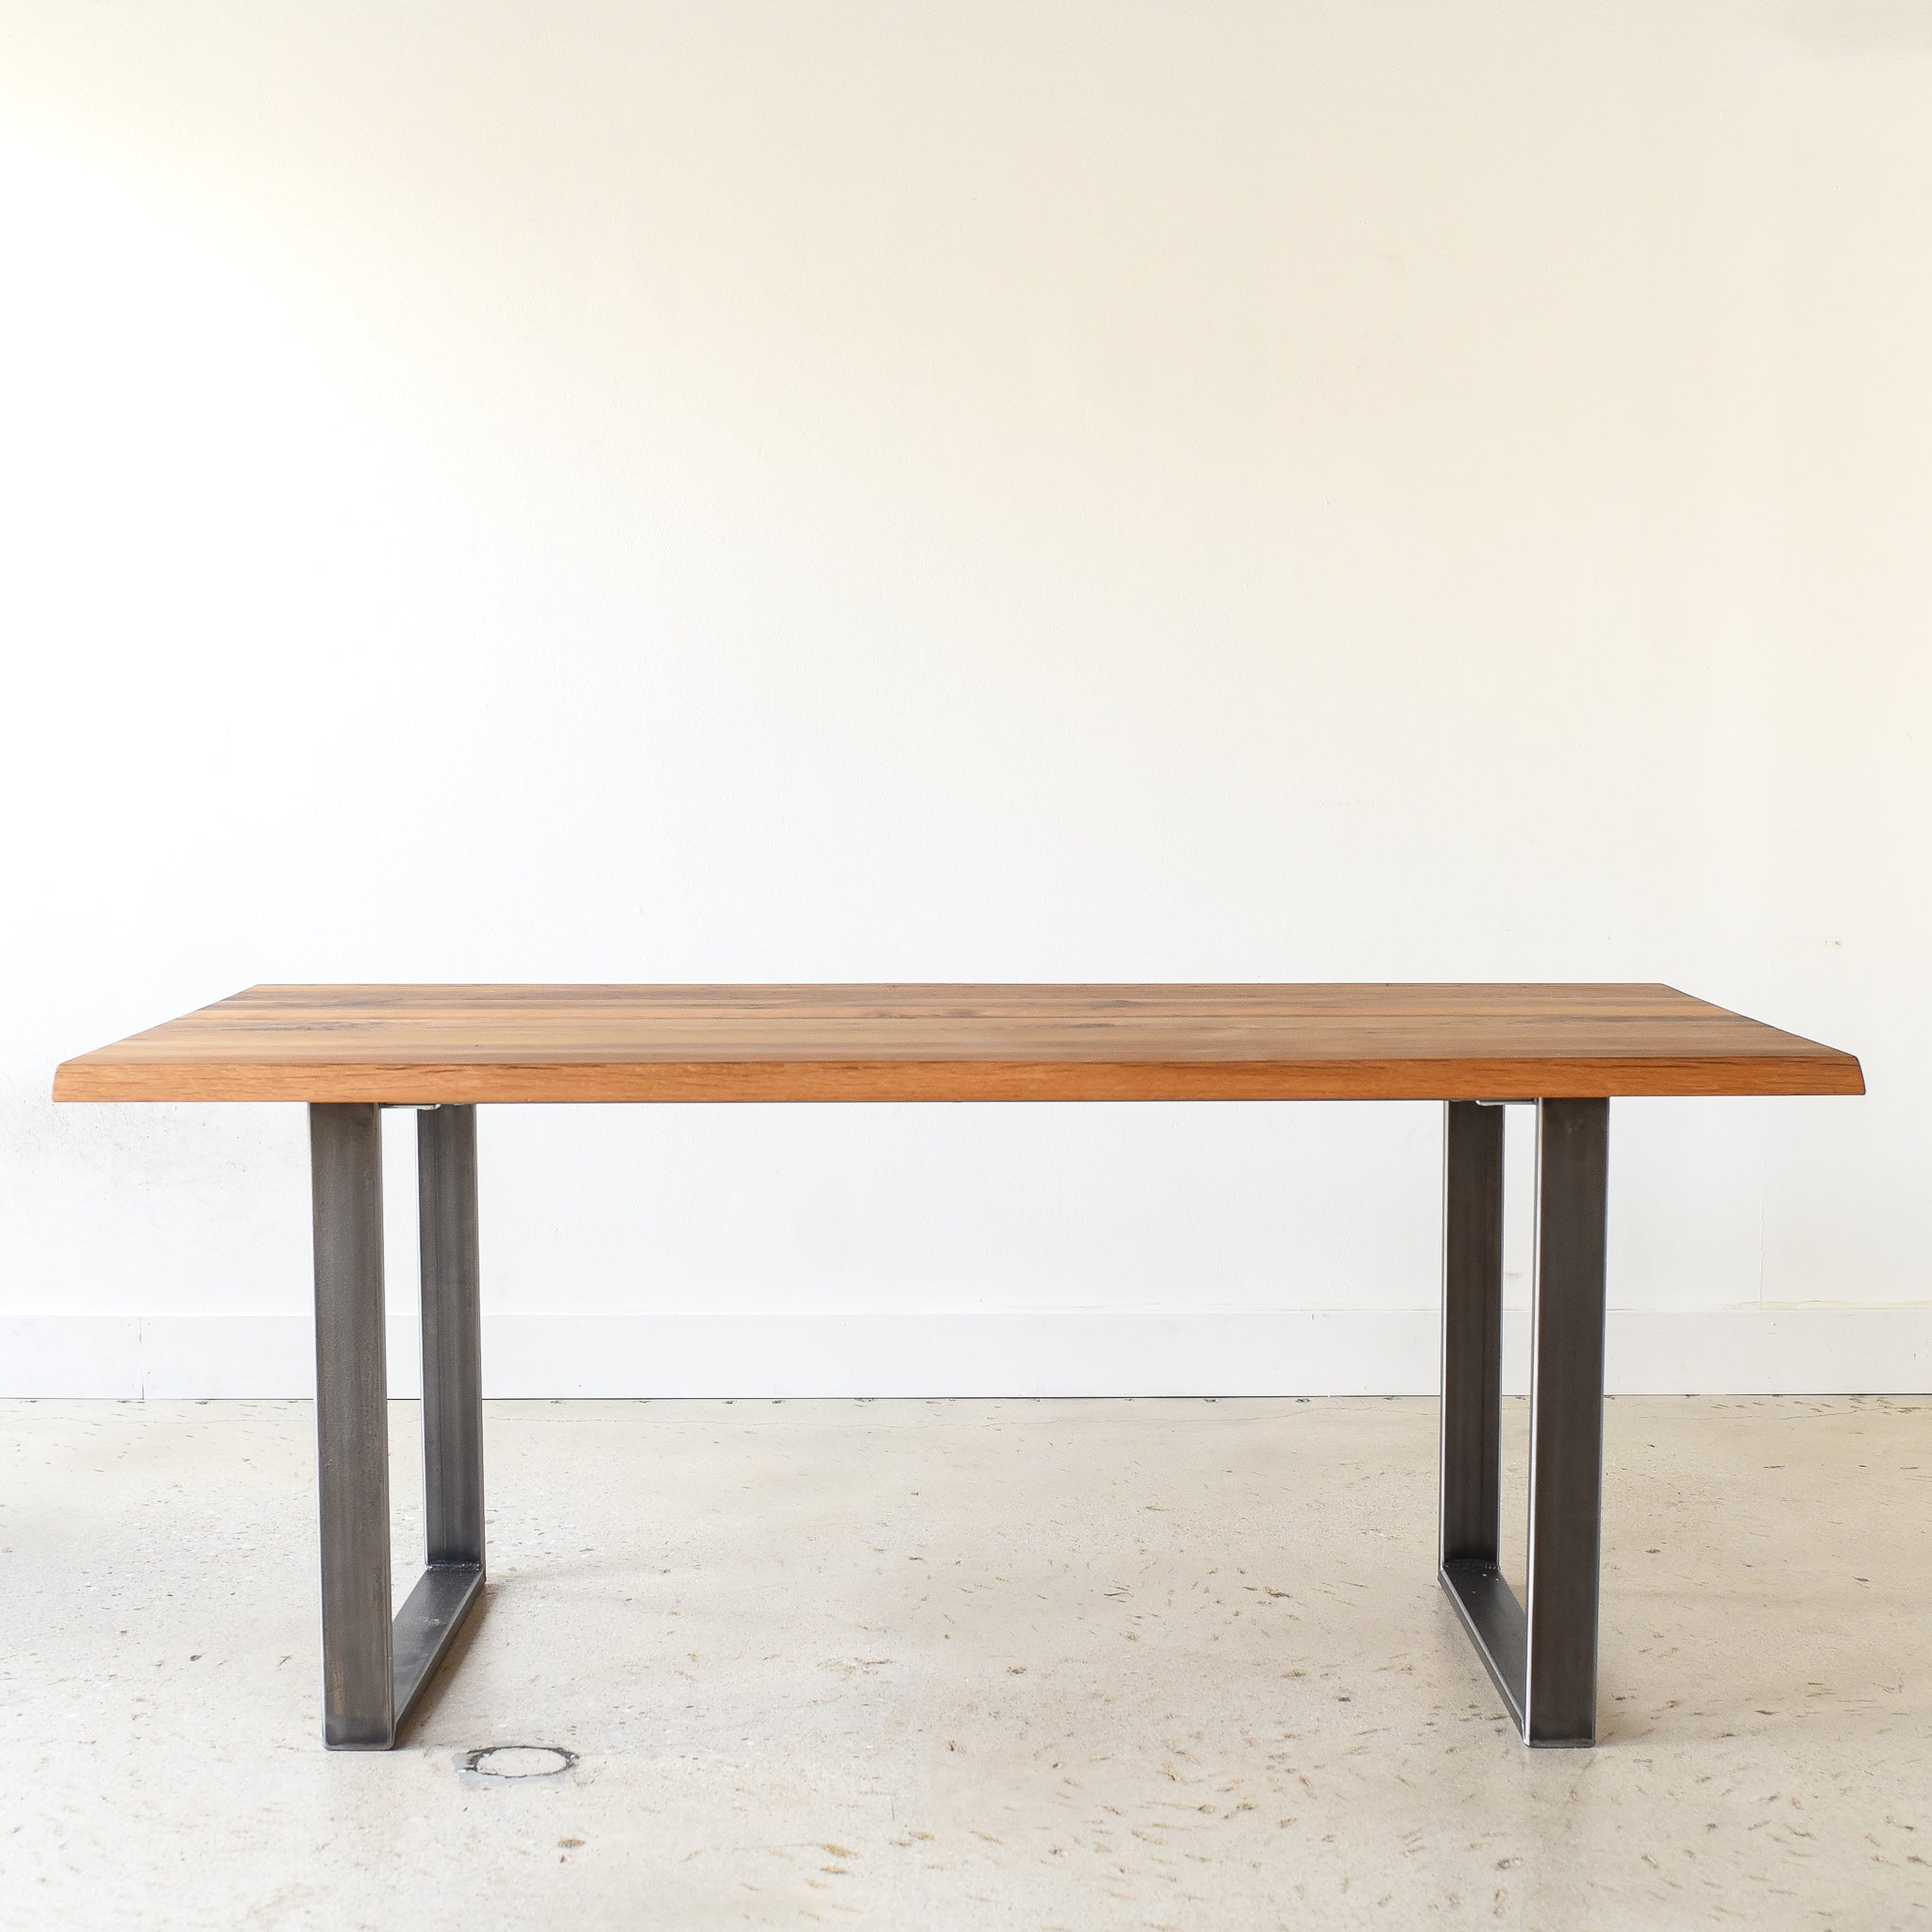 Live Edge Modern Dining Table in Reclaimed Oak / Clear & Blackened Steel 'U-Shaped' Legs